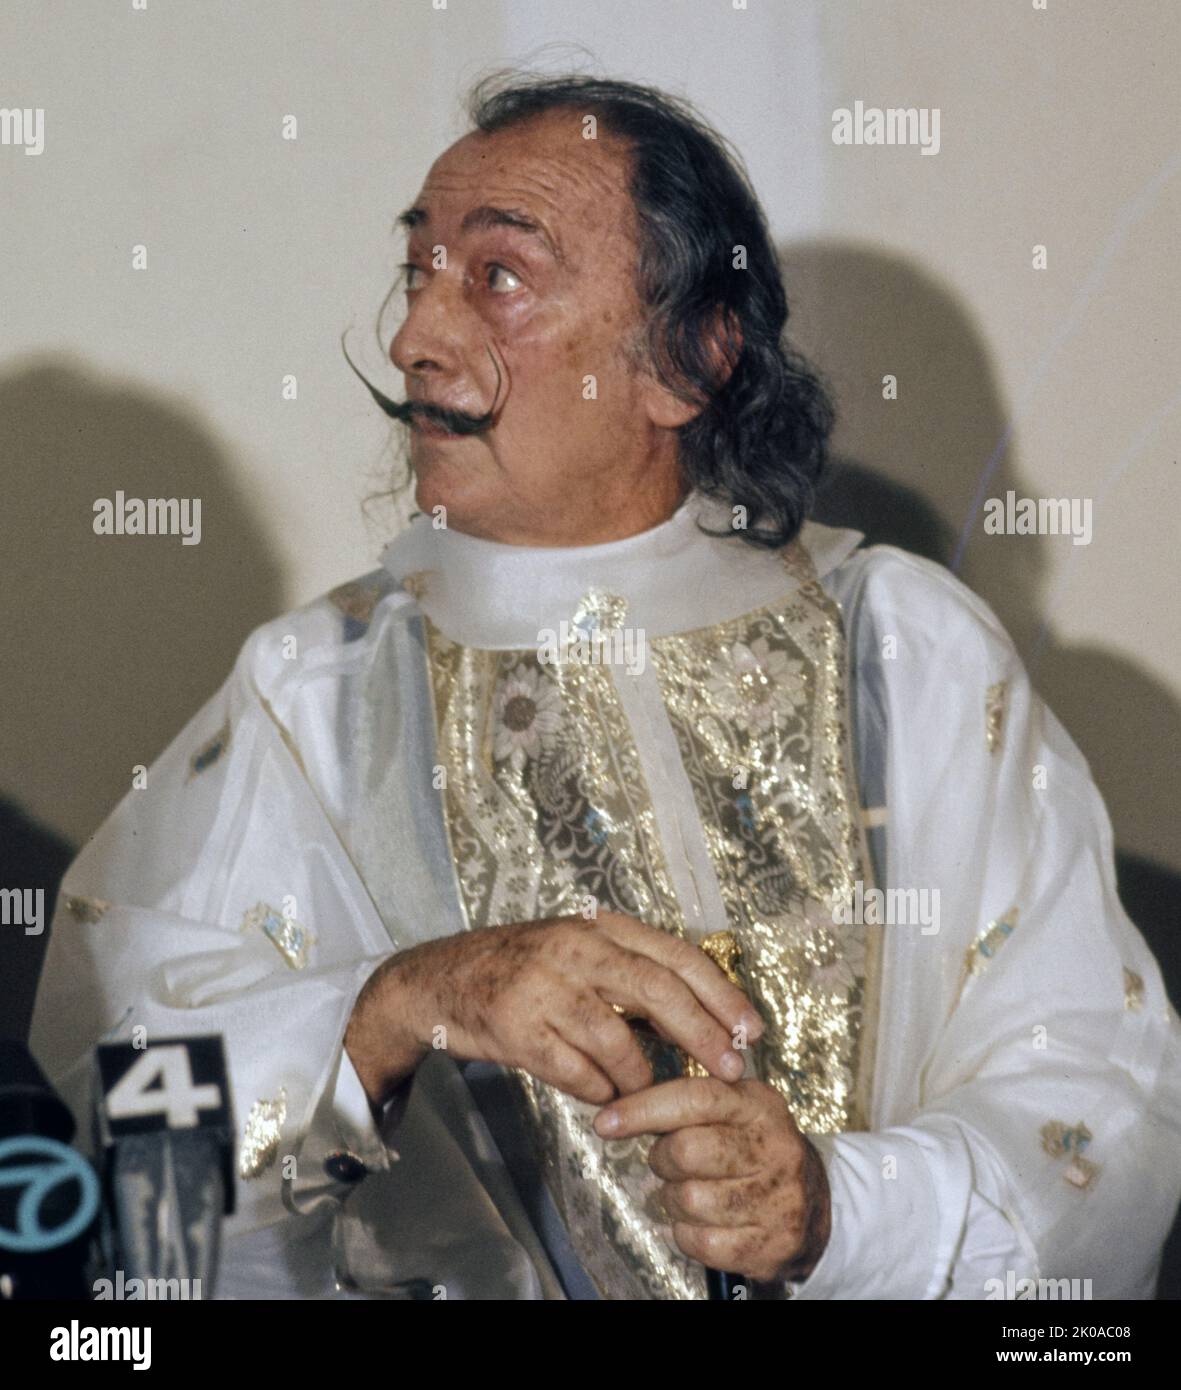 Salvador Dali, (1904 - 1989) spanischer surrealistischer Künstler, der für sein technisches Können, seine präzise Zeichenskunst und die markanten und bizarren Bilder in seinem Werk bekannt ist. Stockfoto